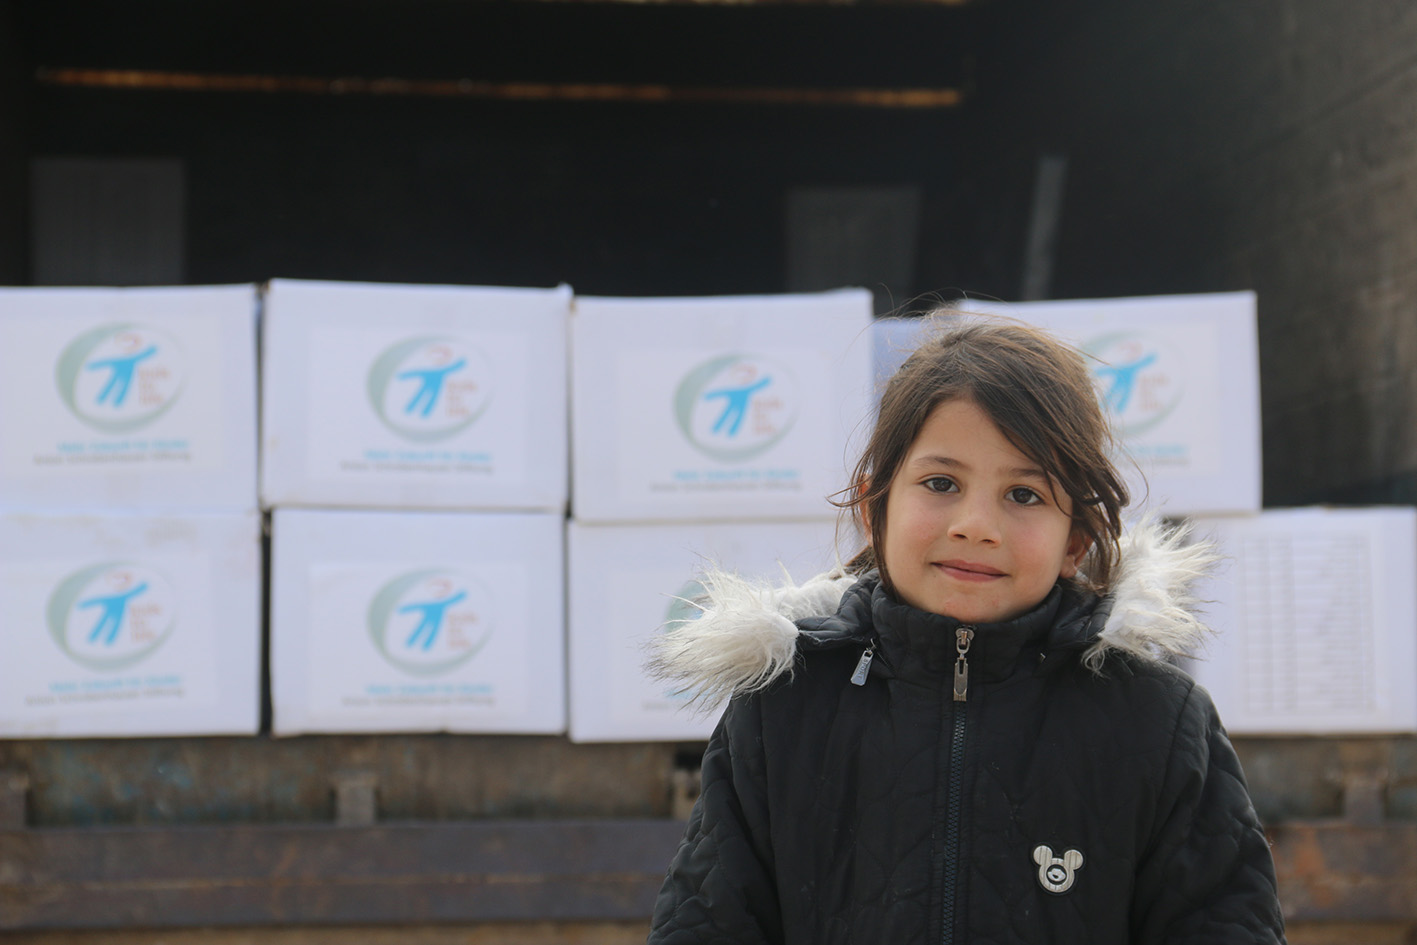 Hilfeleistung nach Erdbeben in Syrien und Türkei: Wir stehen den betroffenen Familien bei!